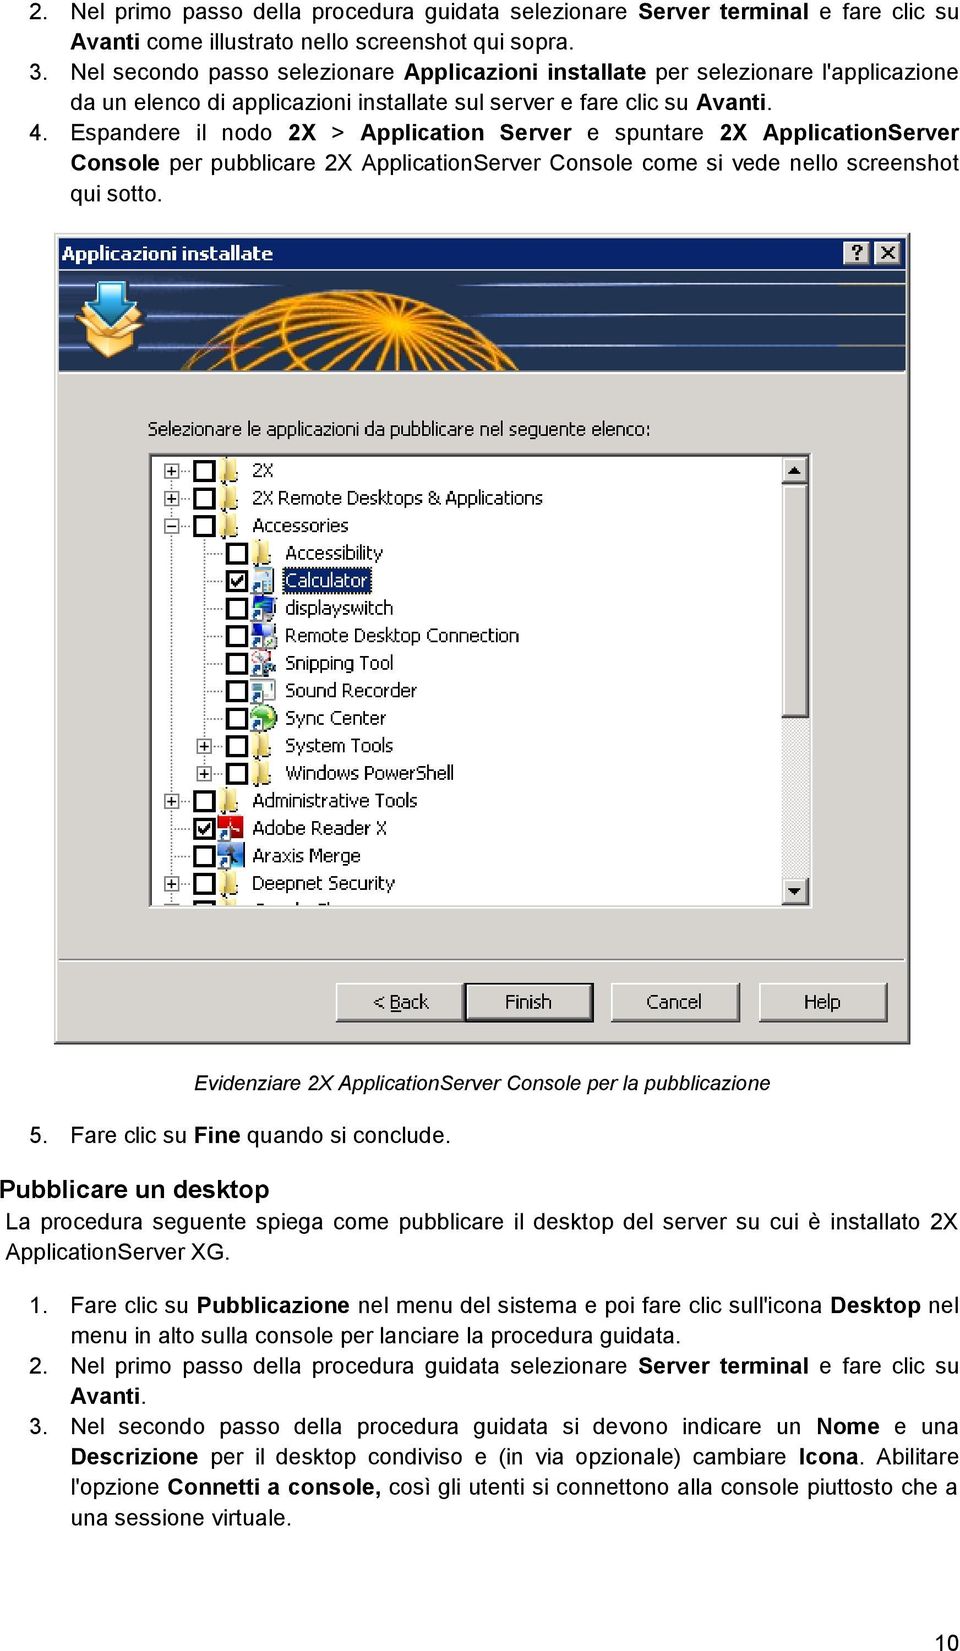 Espandere il nodo 2X > Application Server e spuntare 2X ApplicationServer Console per pubblicare 2X ApplicationServer Console come si vede nello screenshot qui sotto.